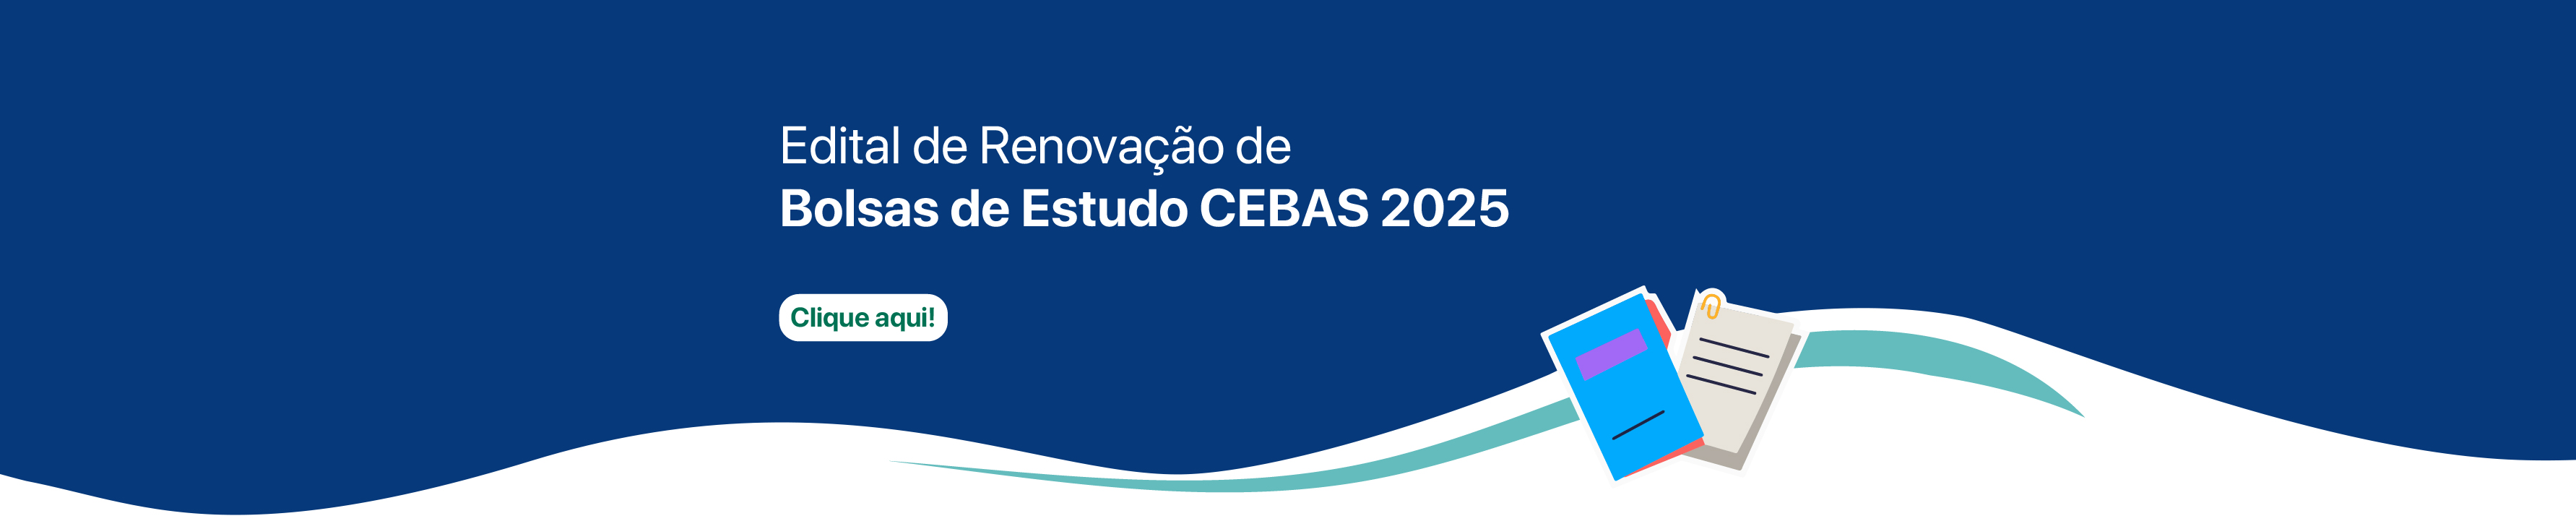 Edital Bolsas de Estudo CEBAS 2025